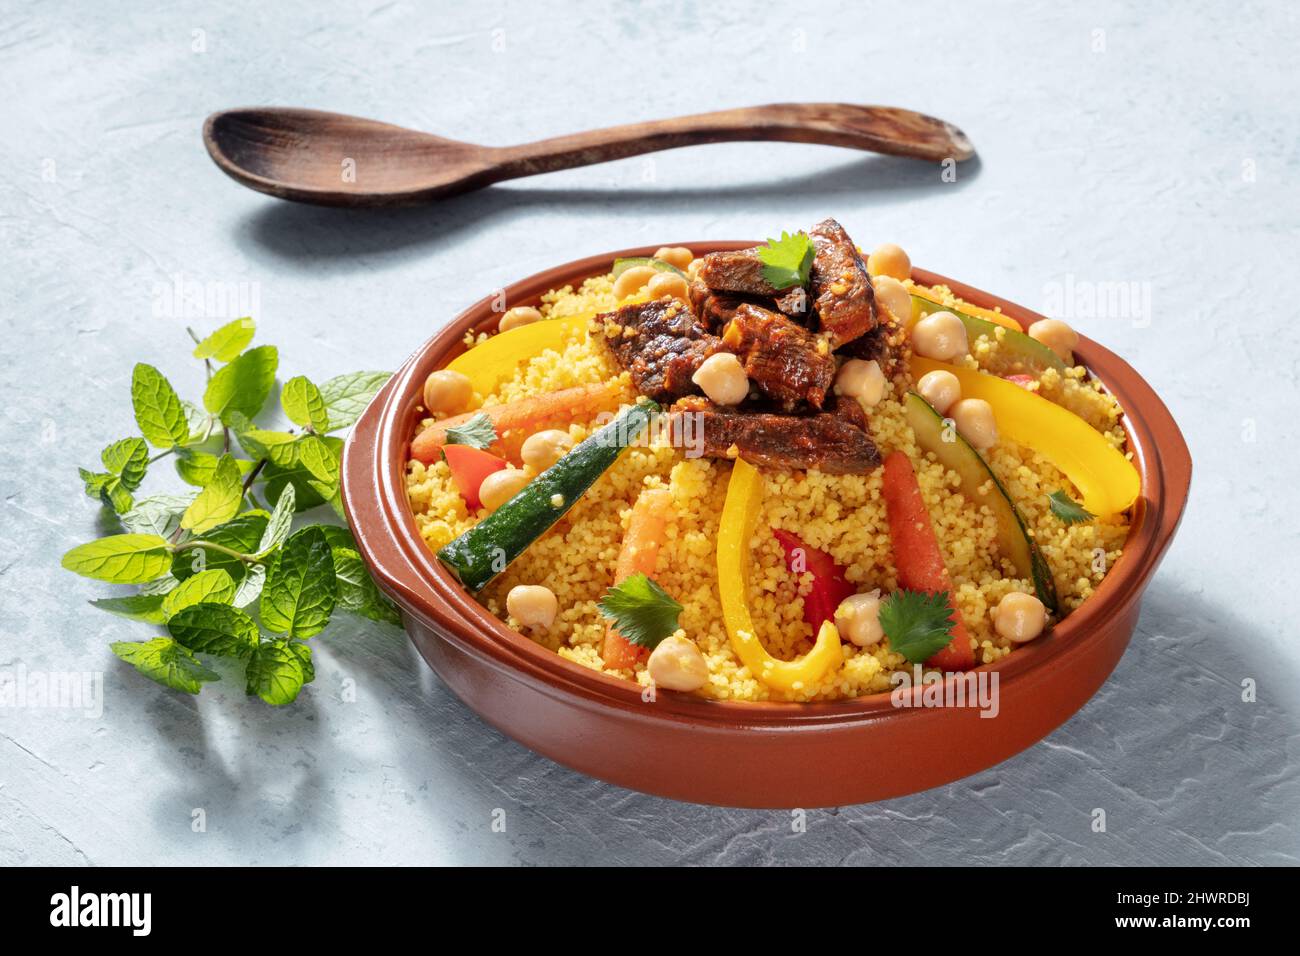 Viande et légumes couscous, cuisine marocaine traditionnelle, avec coriandre fraîche et menthe. Plat arabe festif Banque D'Images